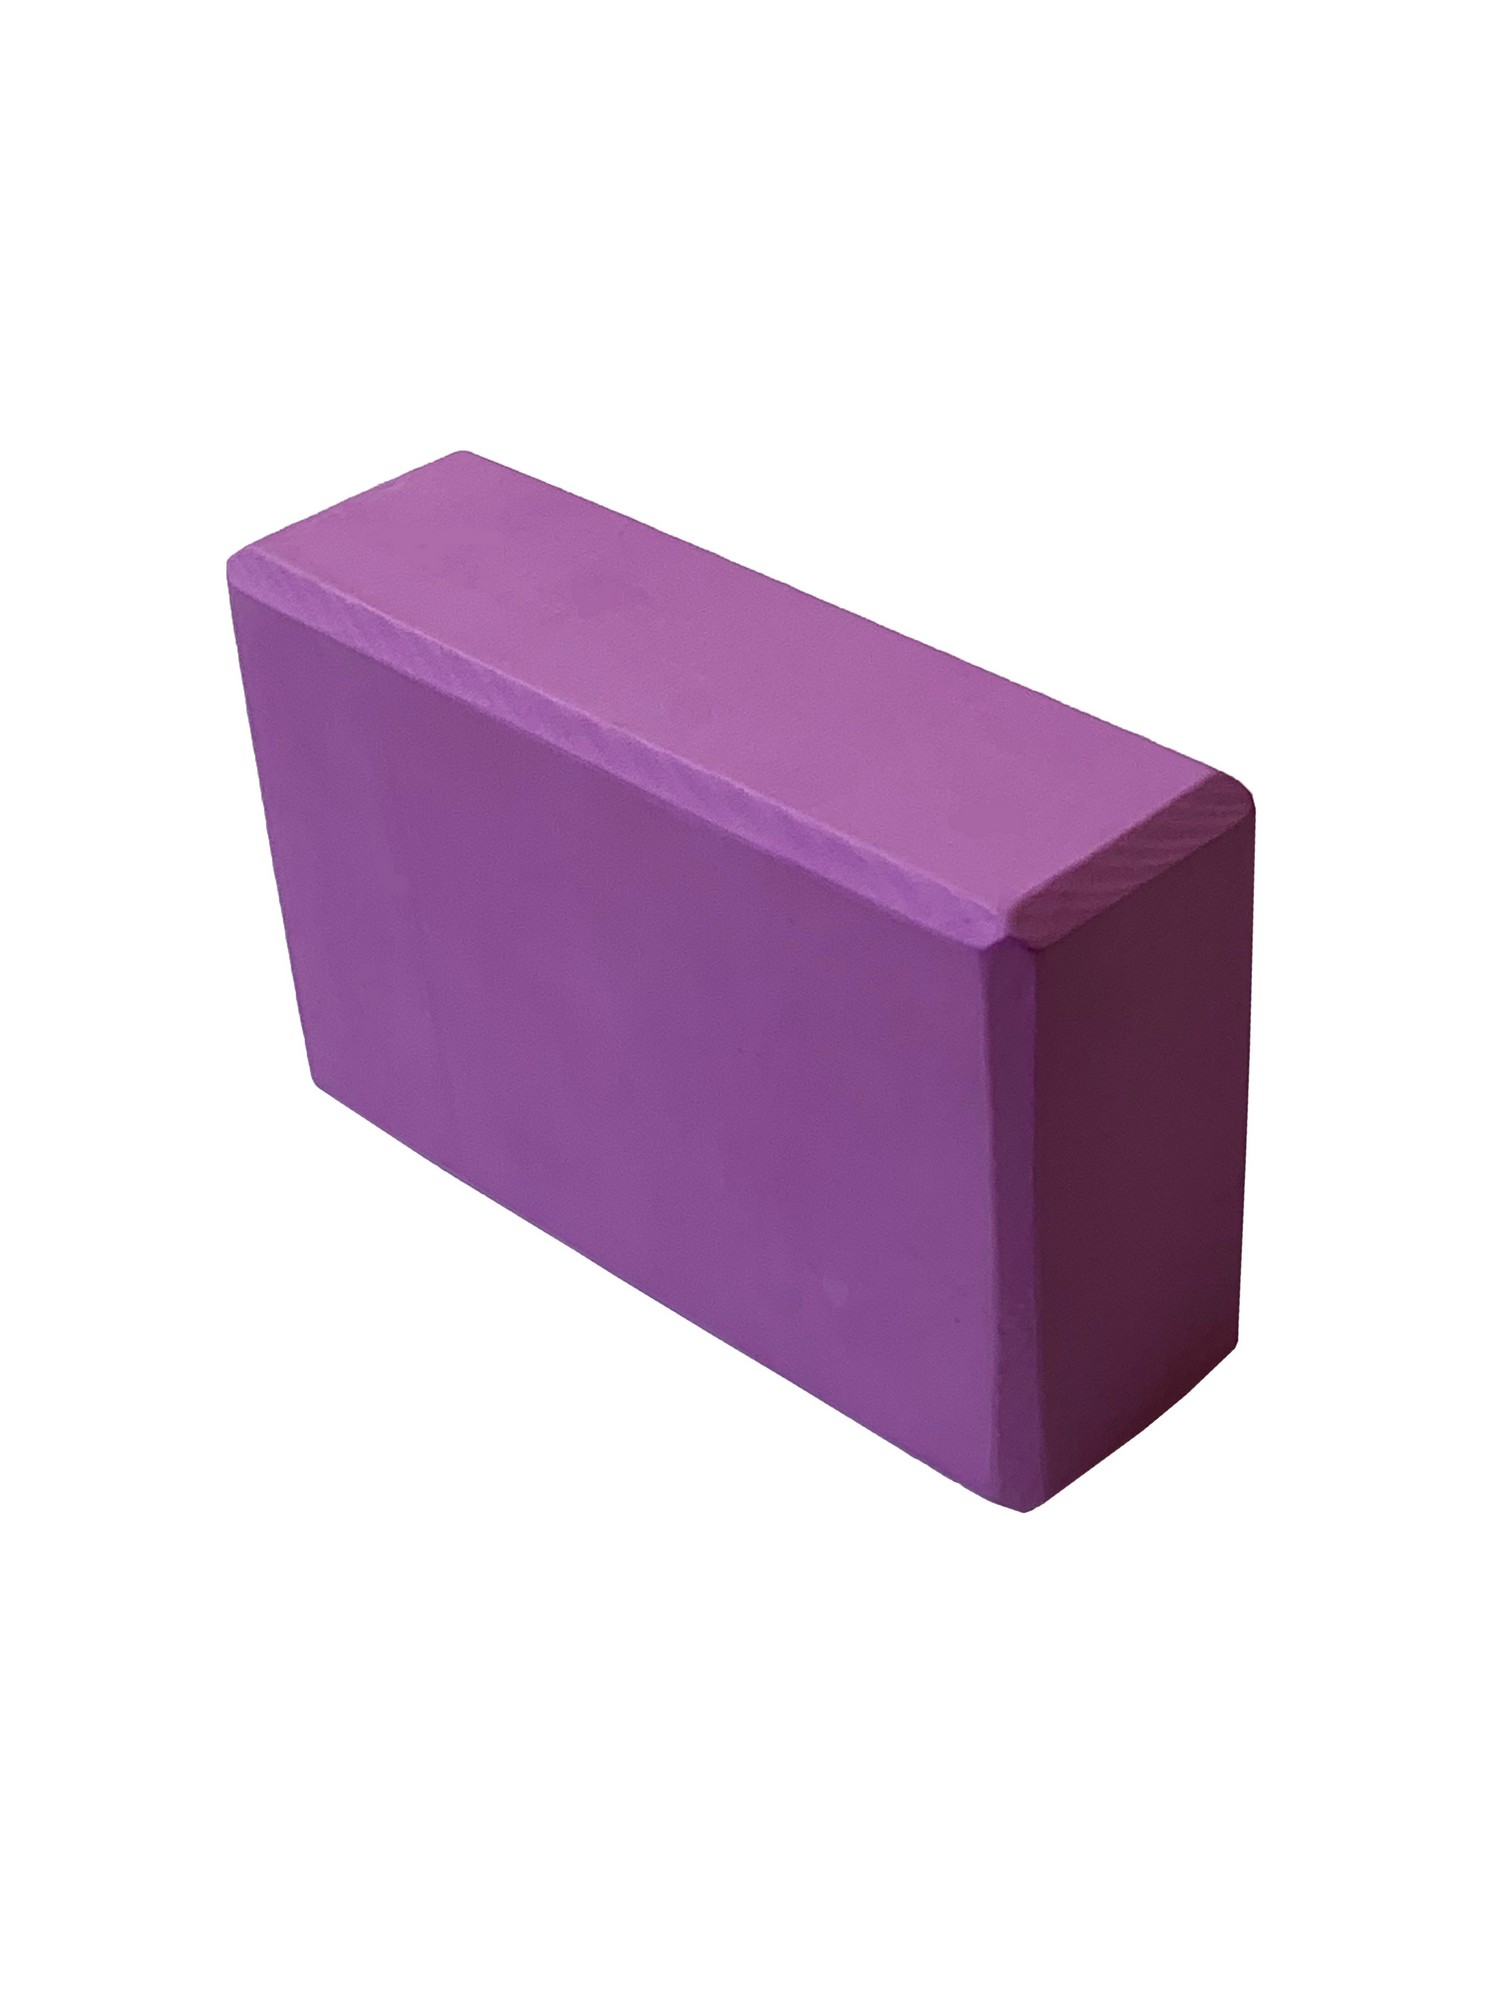 Йога блок Sportex полумягкий, из вспененного ЭВА 22,3х15х7,6 см E39131-51 фиолетовый